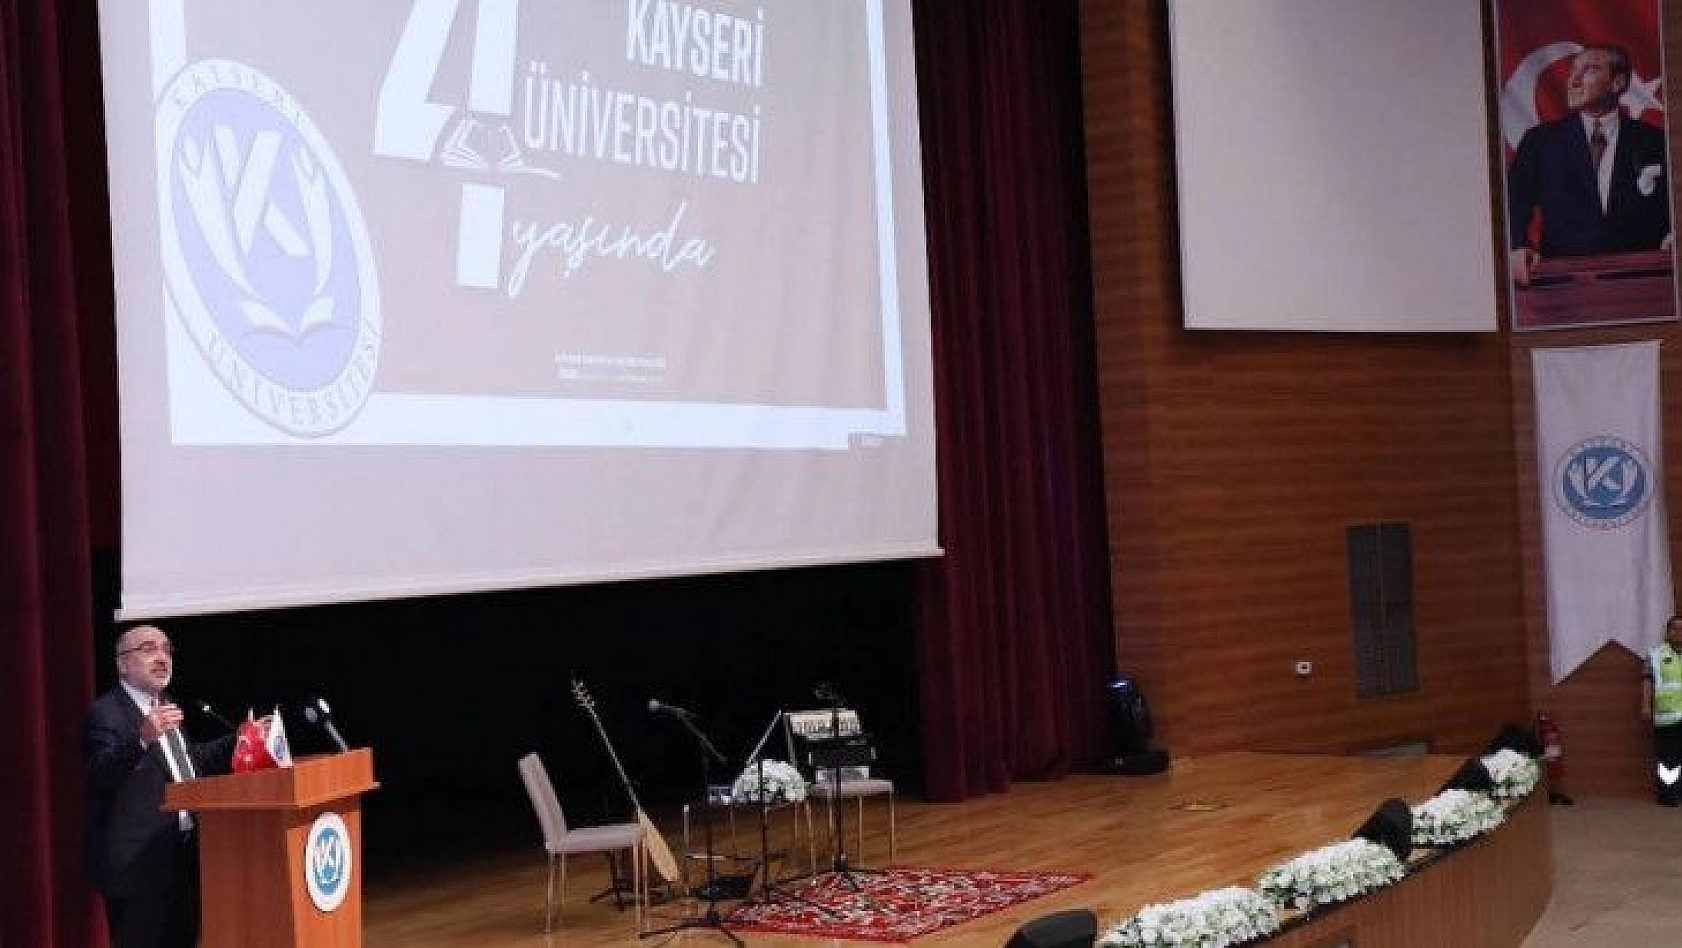 Kayseri Üniversitesi'nin 4. yaş günü kutlandı